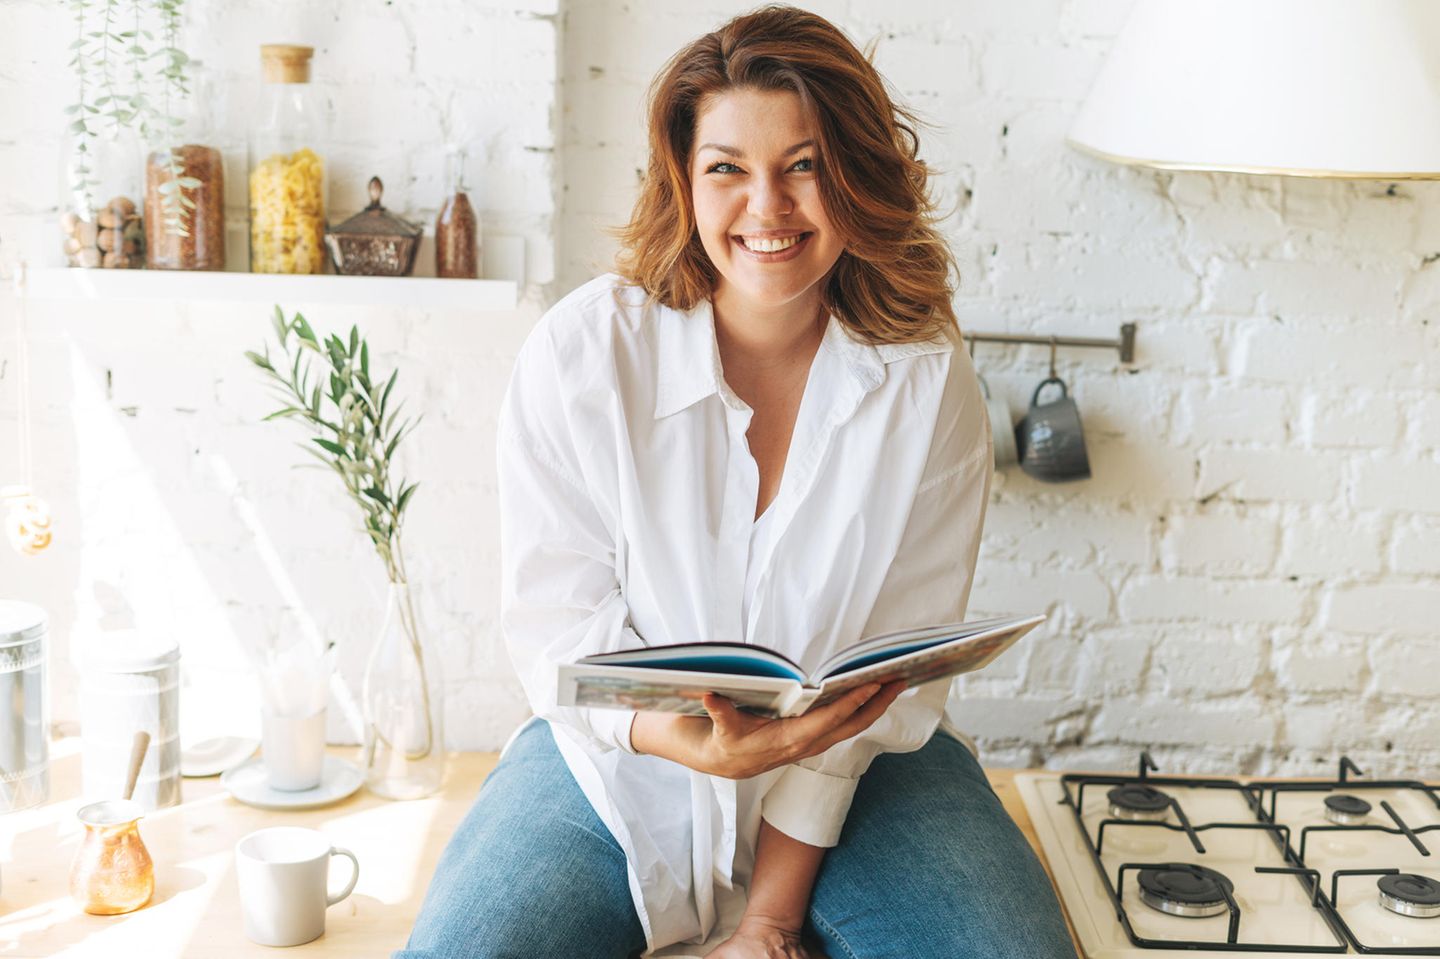 Brünette Frau lächelt, sitzt auf der Küchenarbeitsplatte und hält ein geöffnetes Kochbuch in den Händen